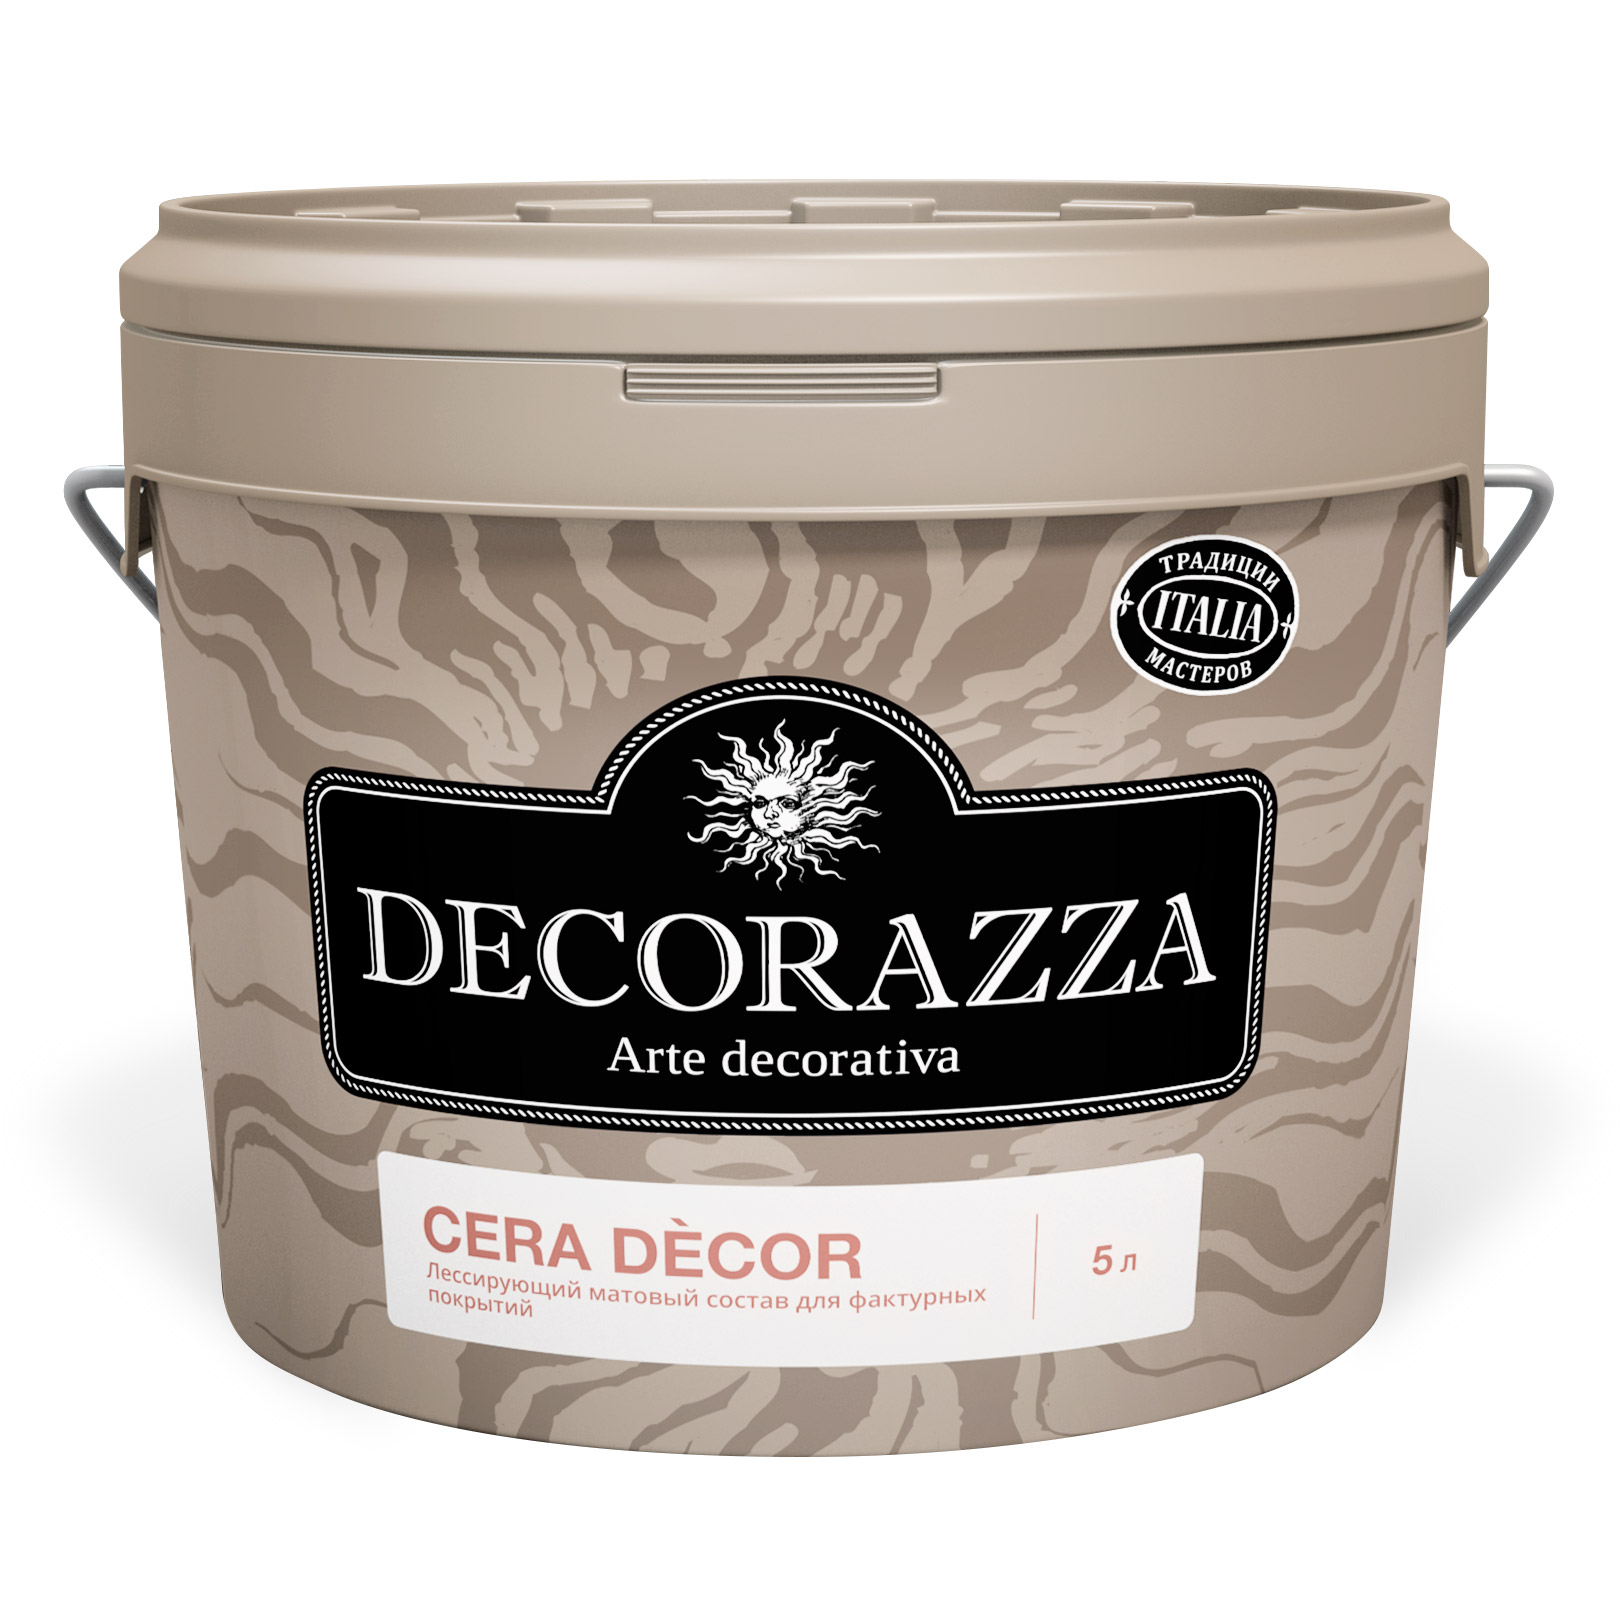 Где купить Воск для штукатурок Cera Decor Decorazza 2,5 кг Decorazza 